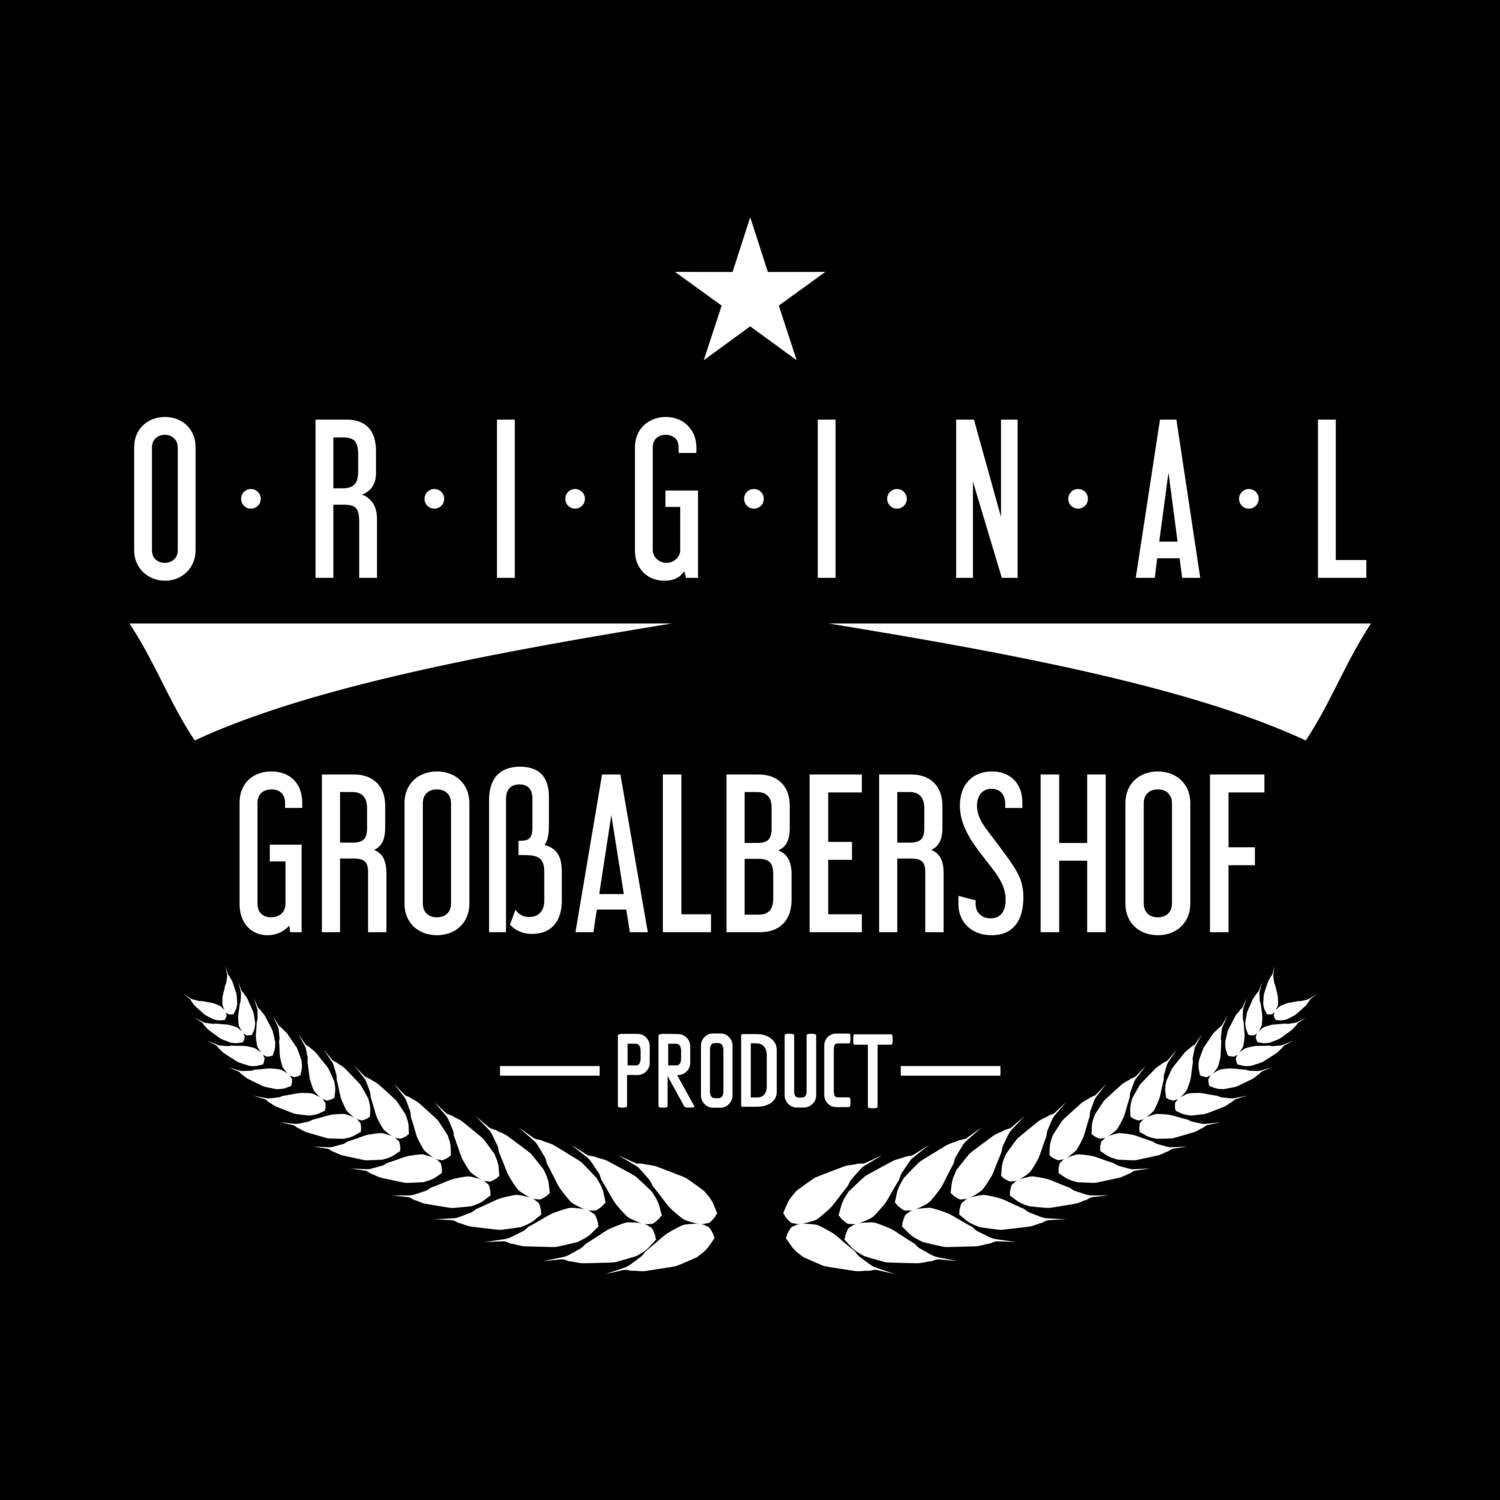 Großalbershof T-Shirt »Original Product«